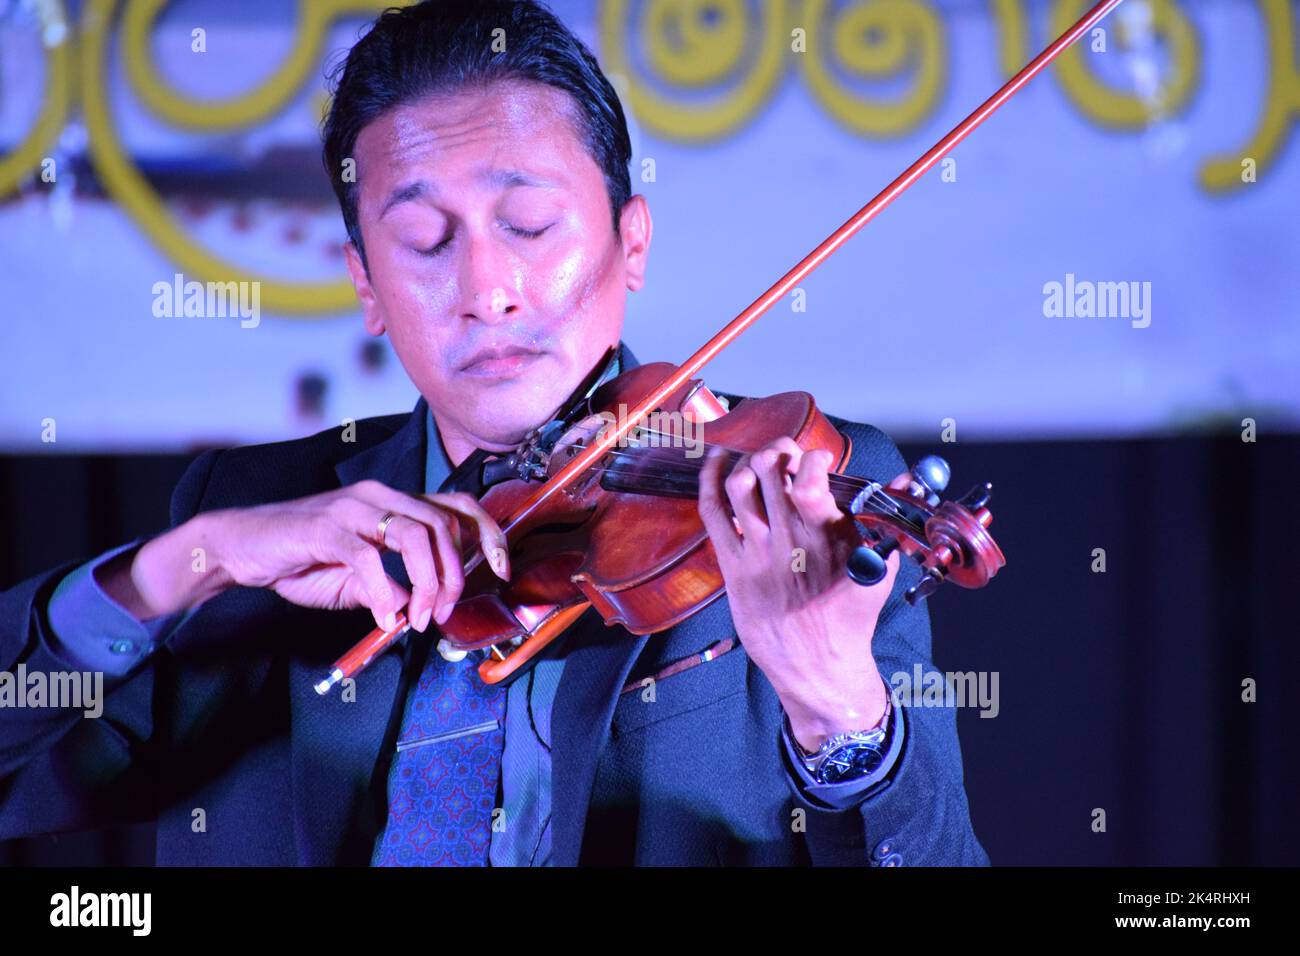 Homme jouant de violon montrant des émotions et des expressions Banque D'Images